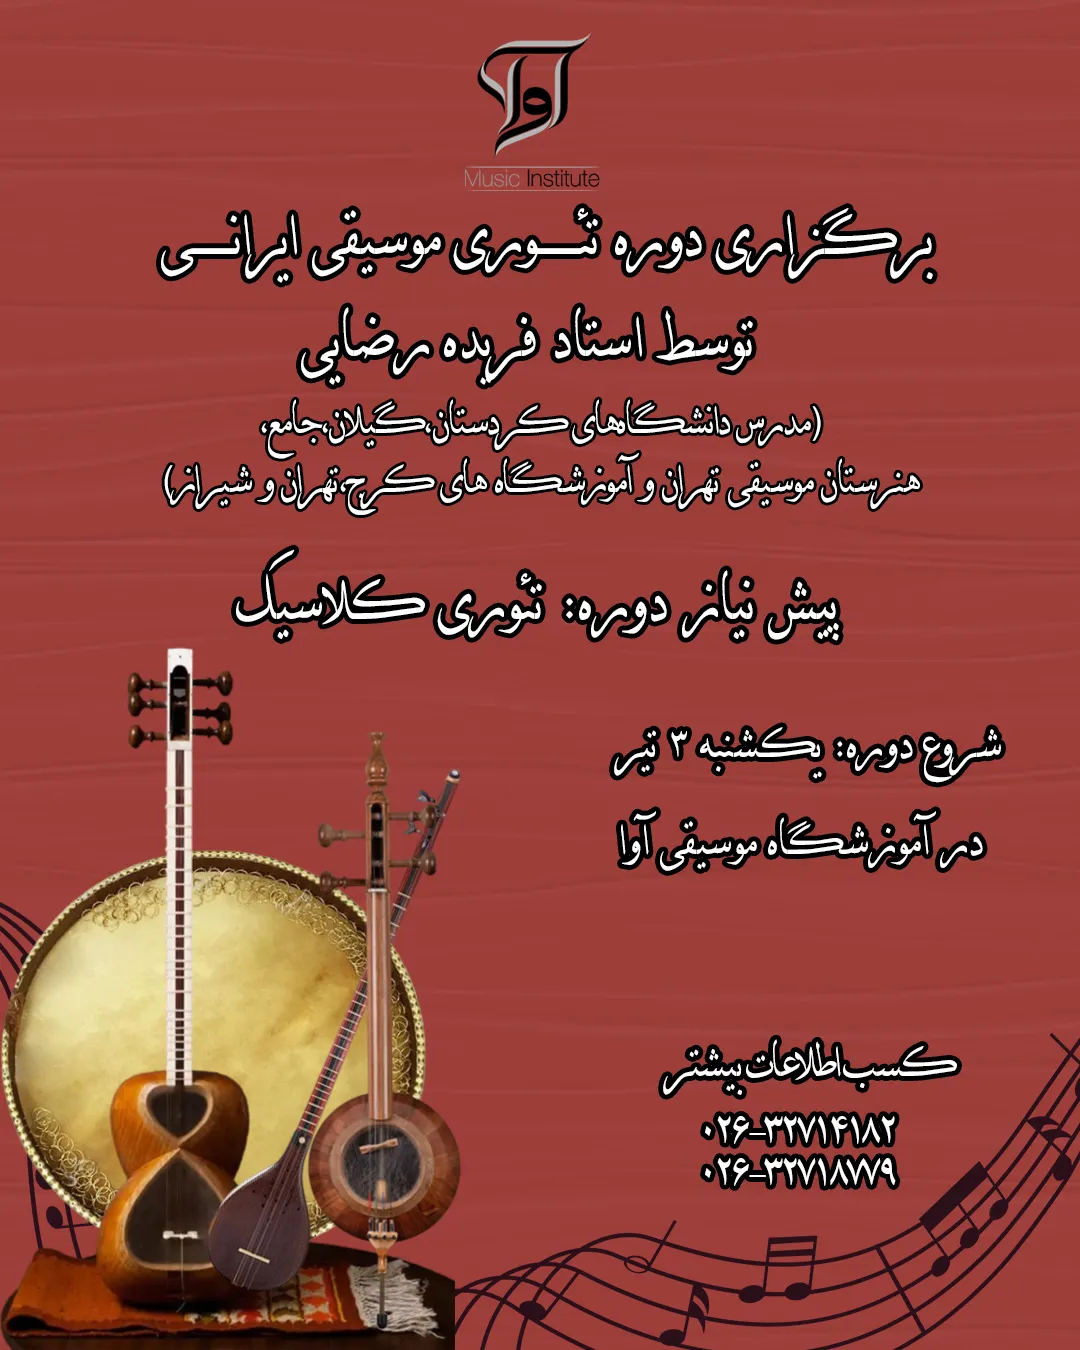 دوره تئوری موسیقی ایرانی